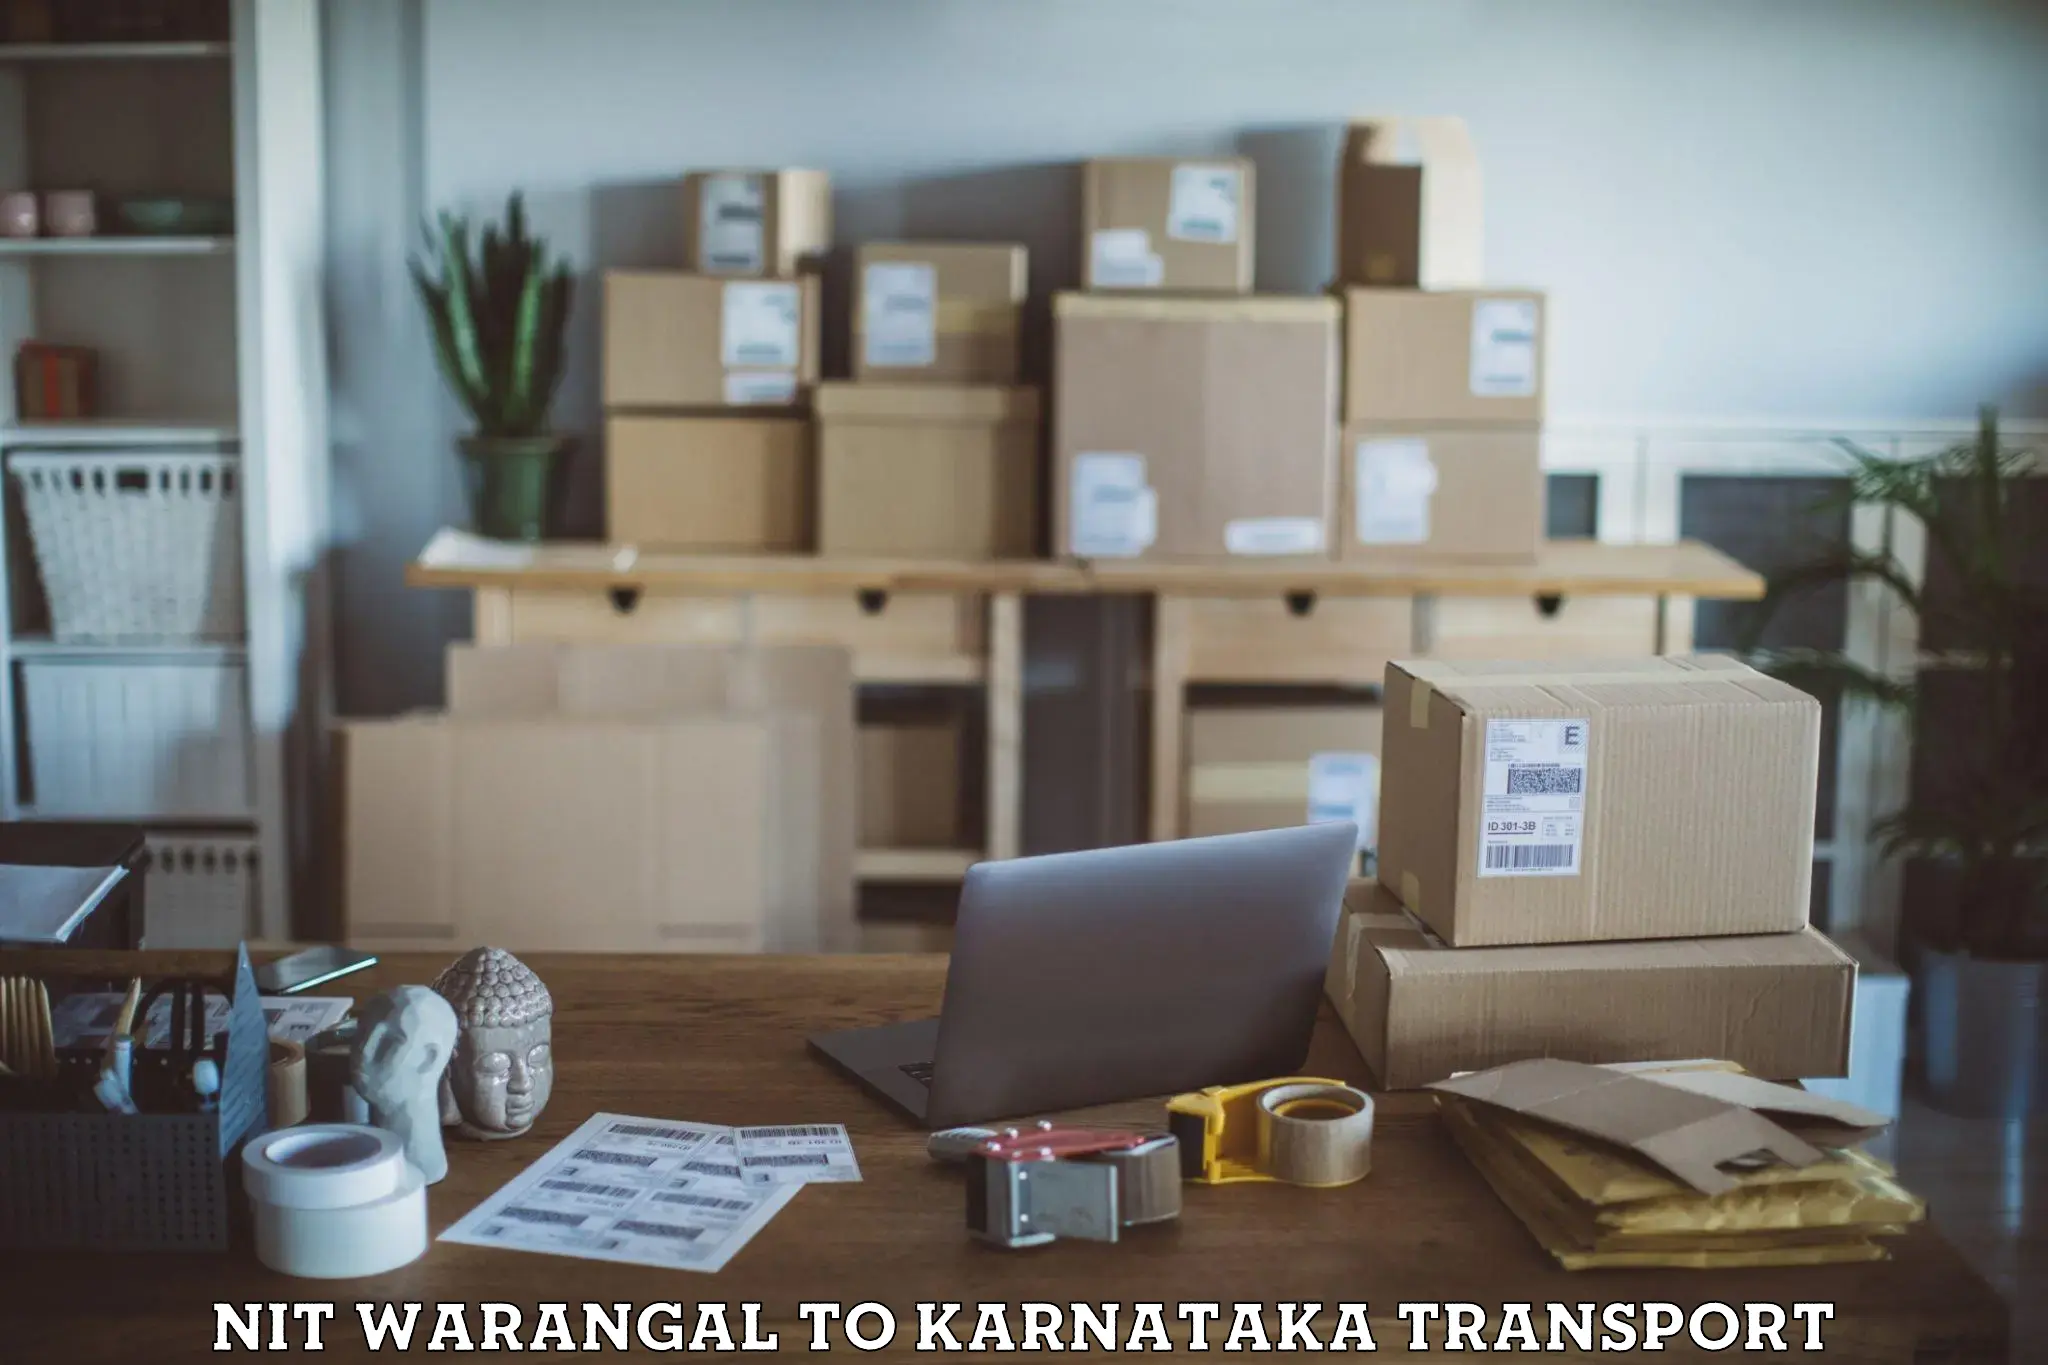 Furniture transport service NIT Warangal to Karnataka